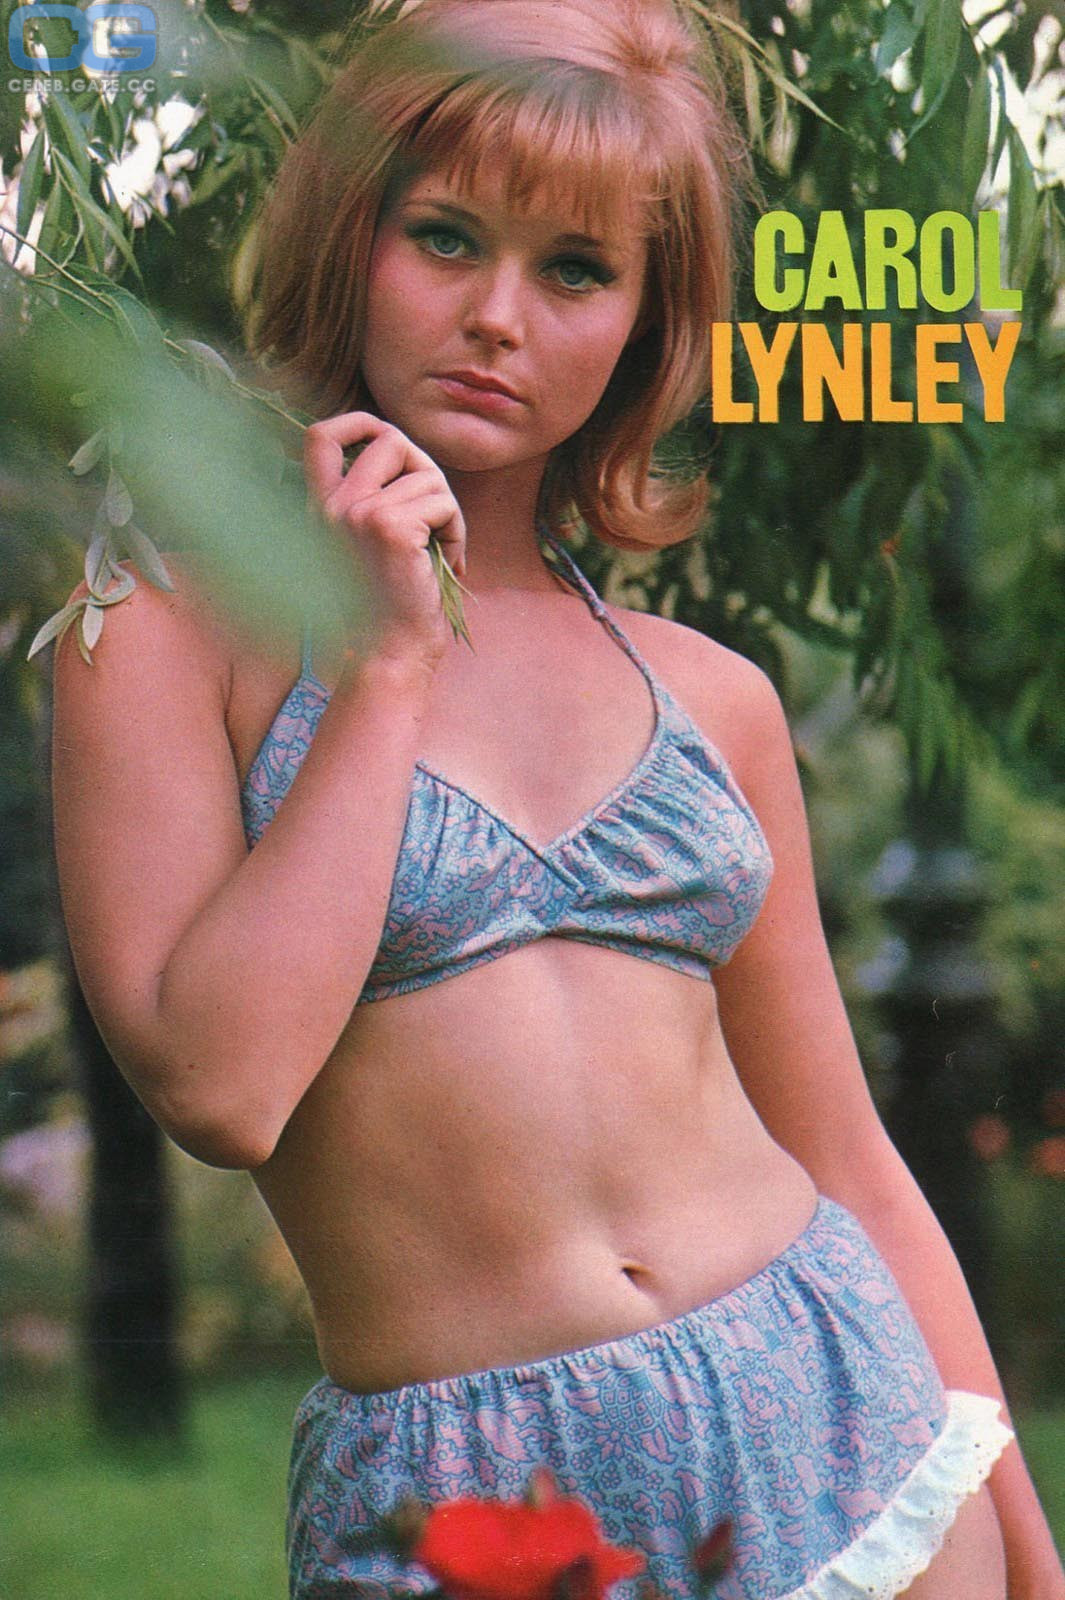 Carol Lynley body